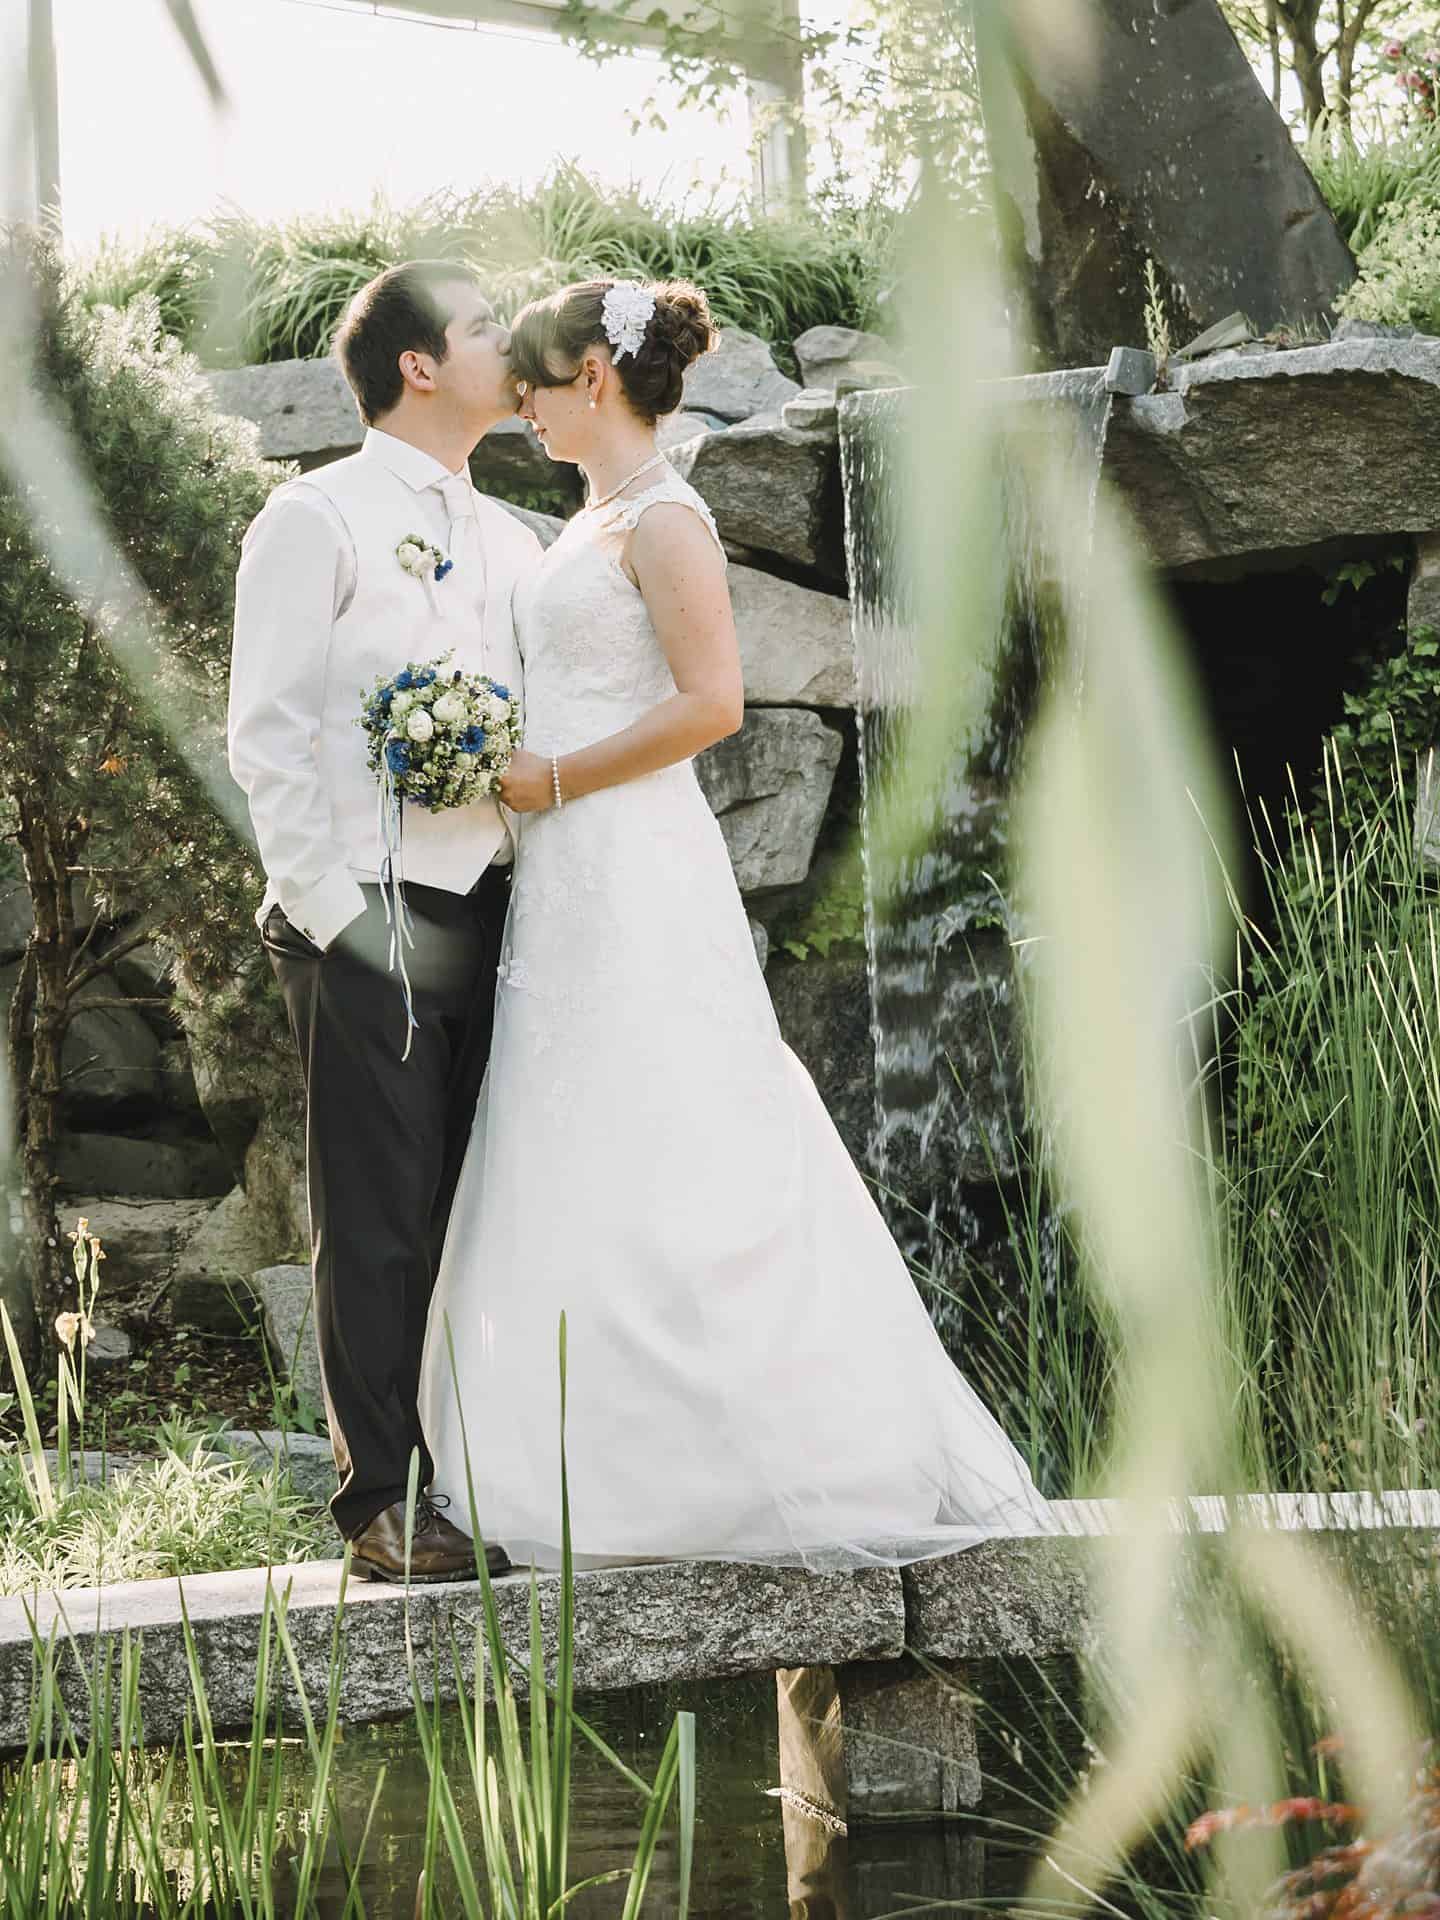 Ein Brautpaar küsst sich vor einem Teich.